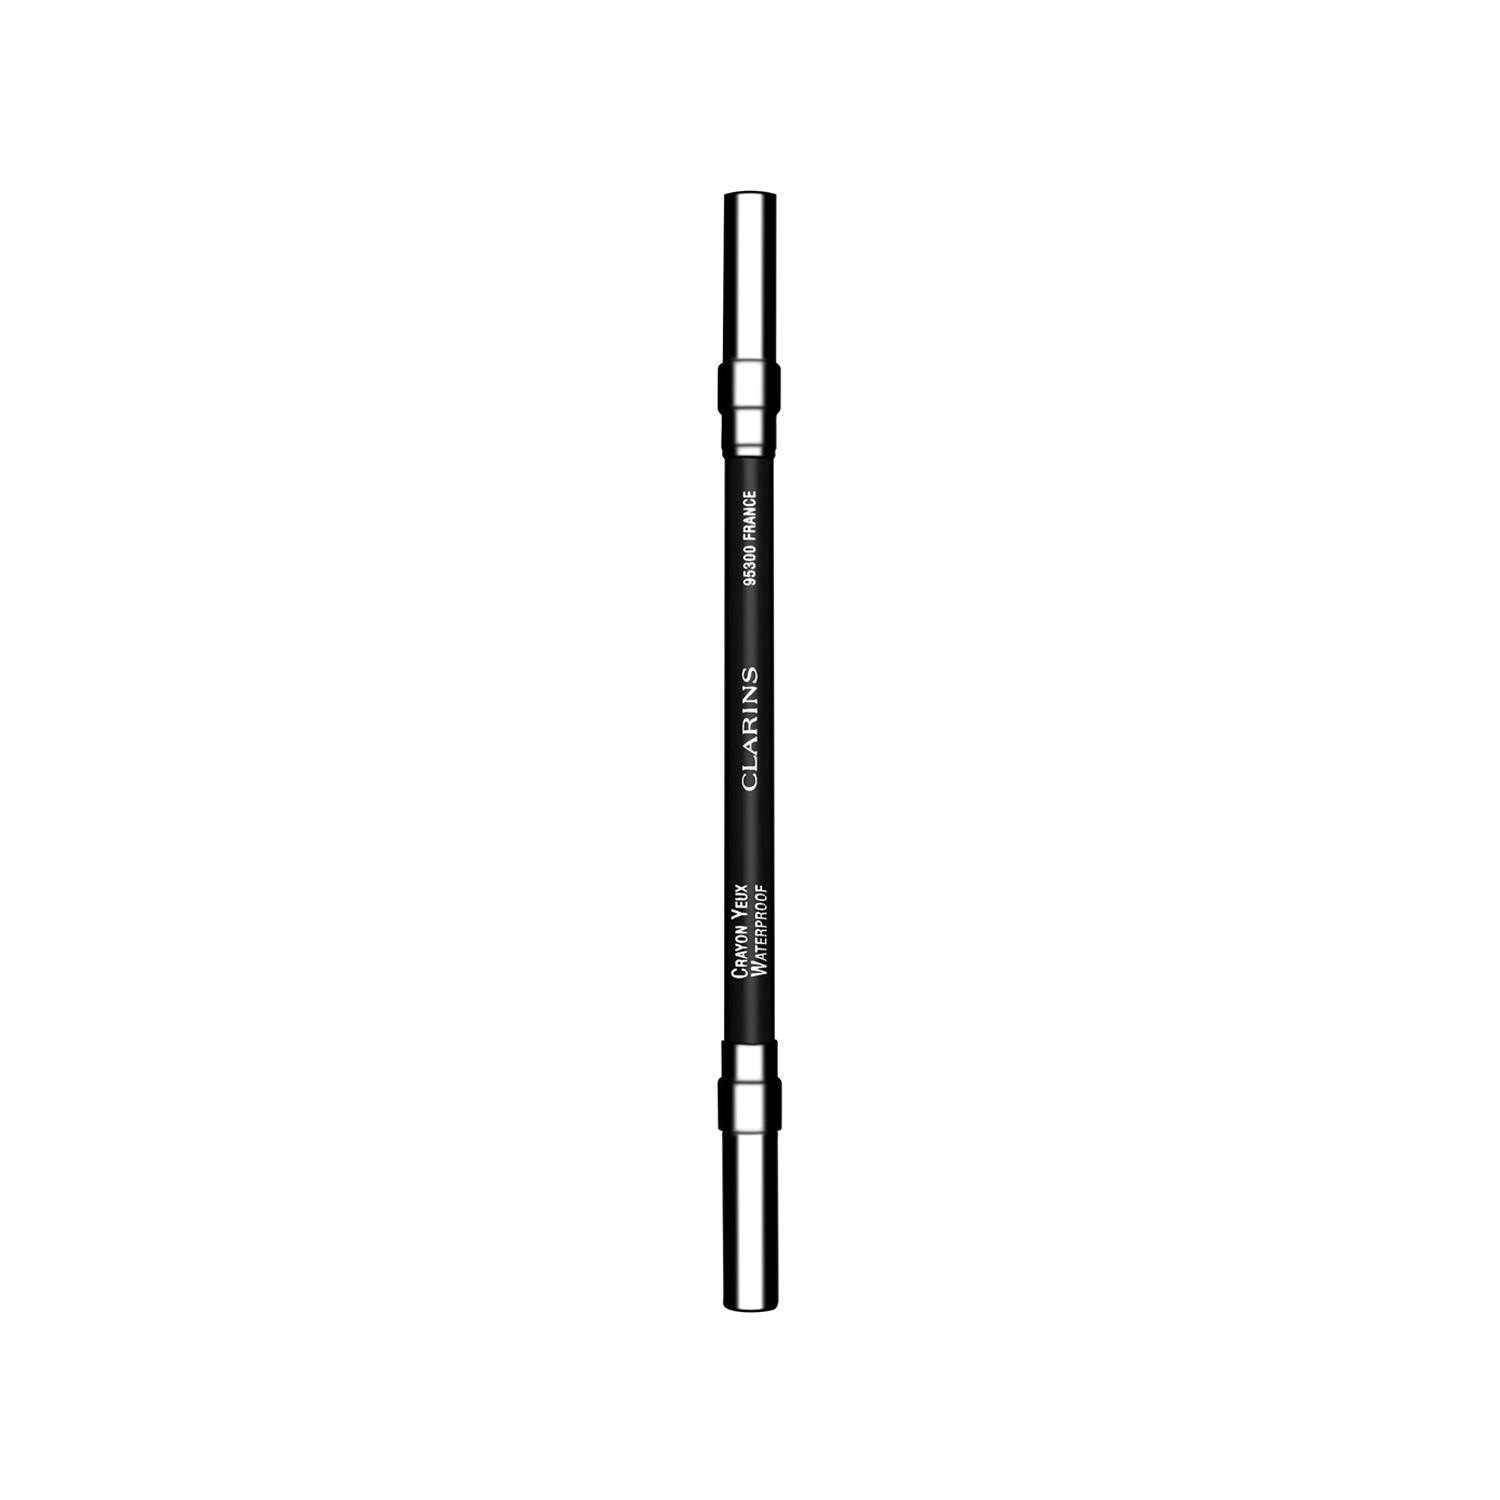 Clarins Waterproof Eye Pencil 01 Black 1.3g